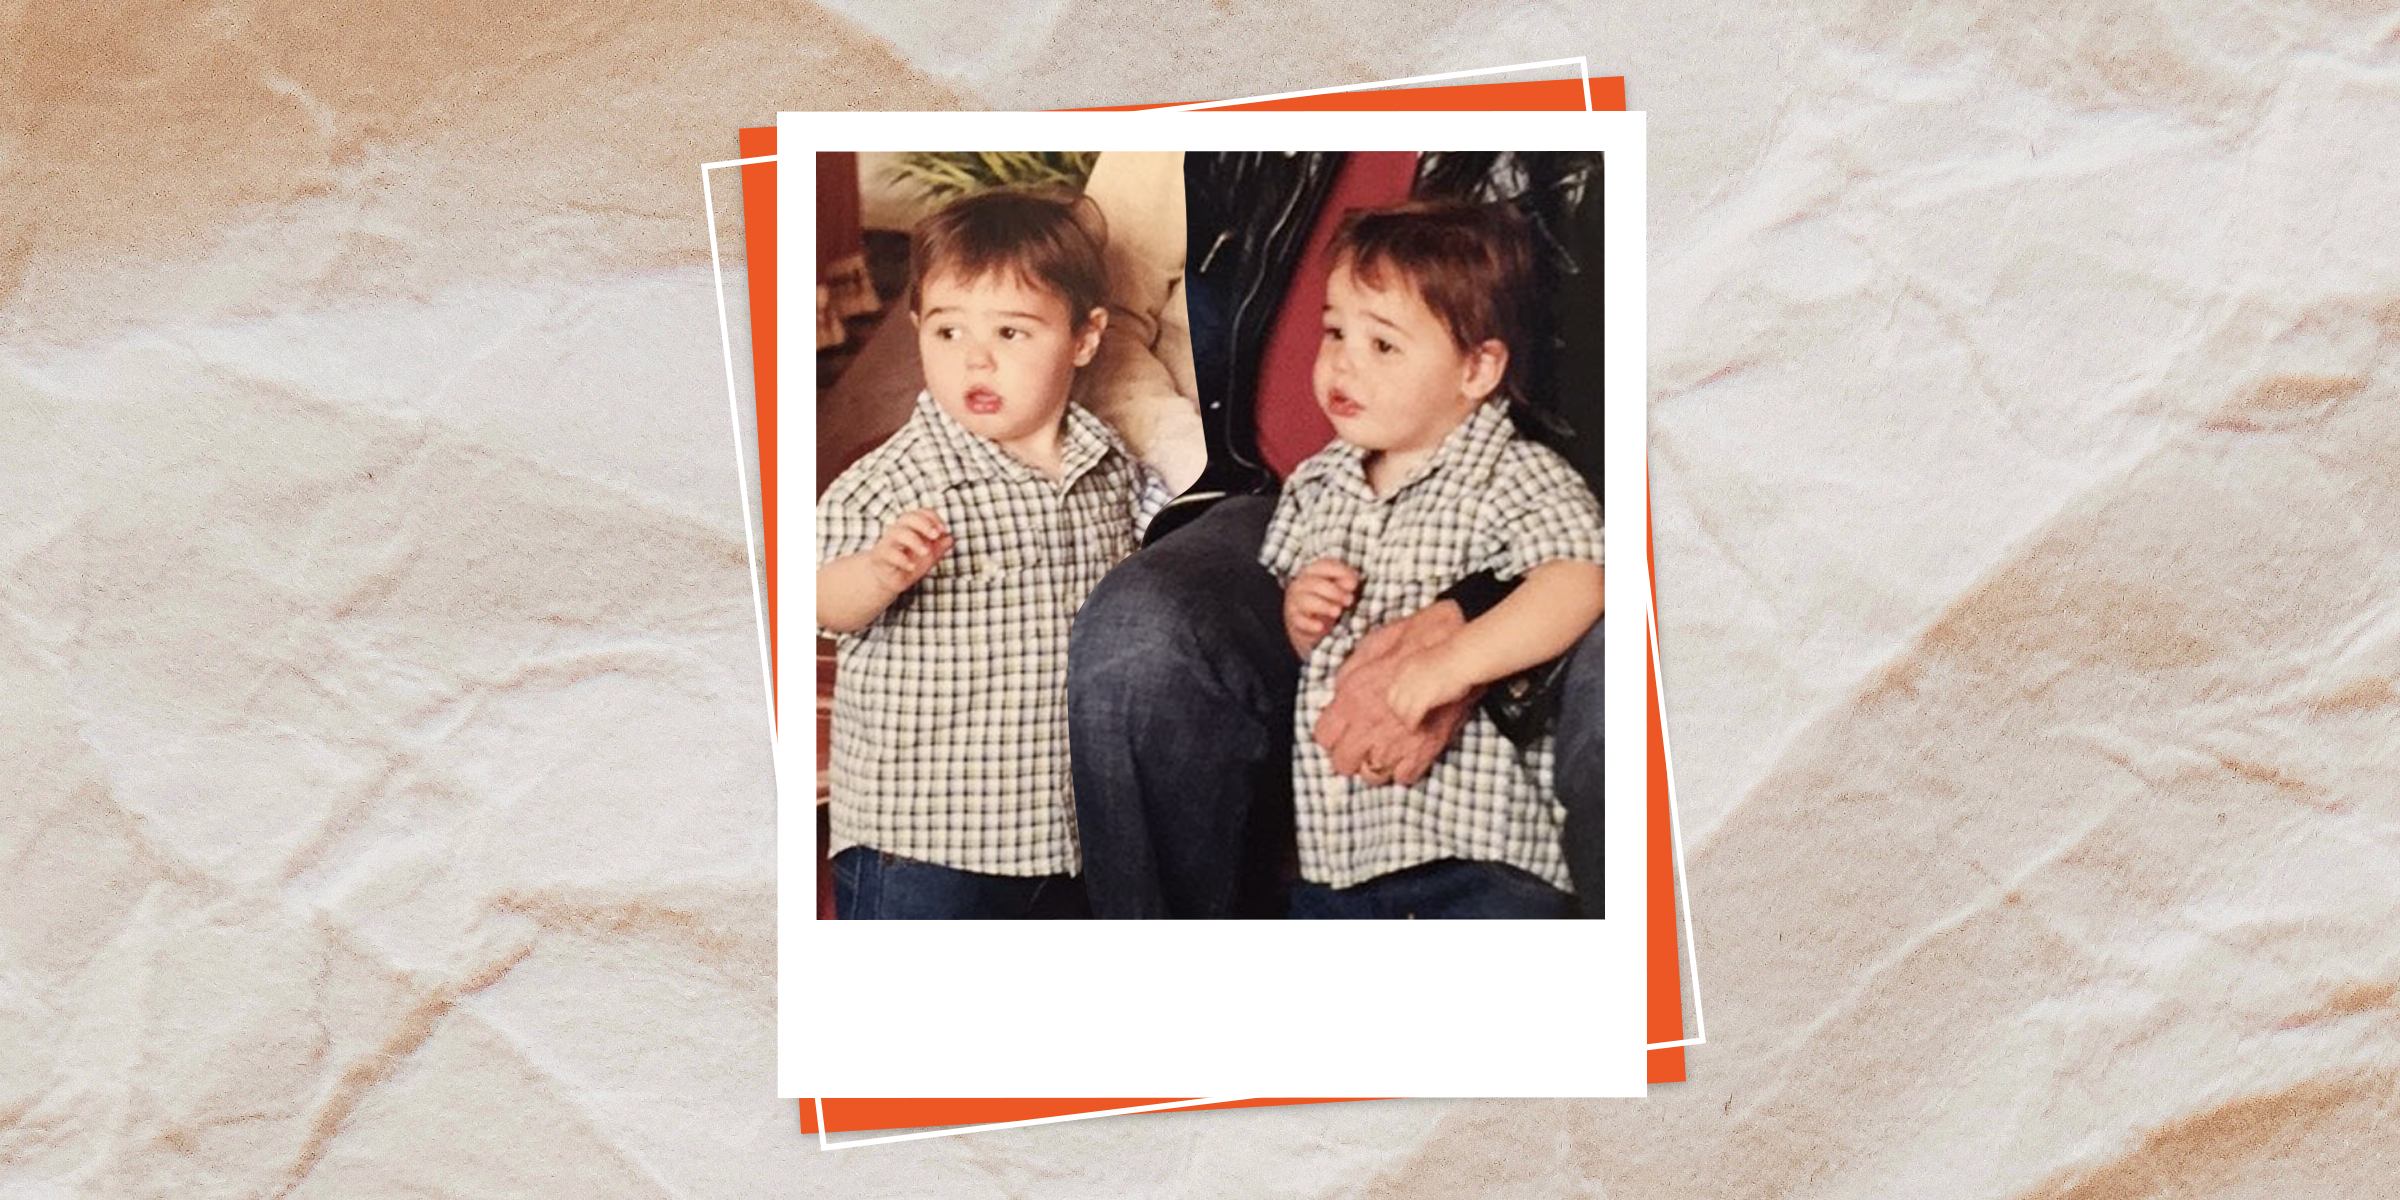 Les jumeaux de la célèbre star, 2017 | Source : Instagram.com/wandamillerrogers